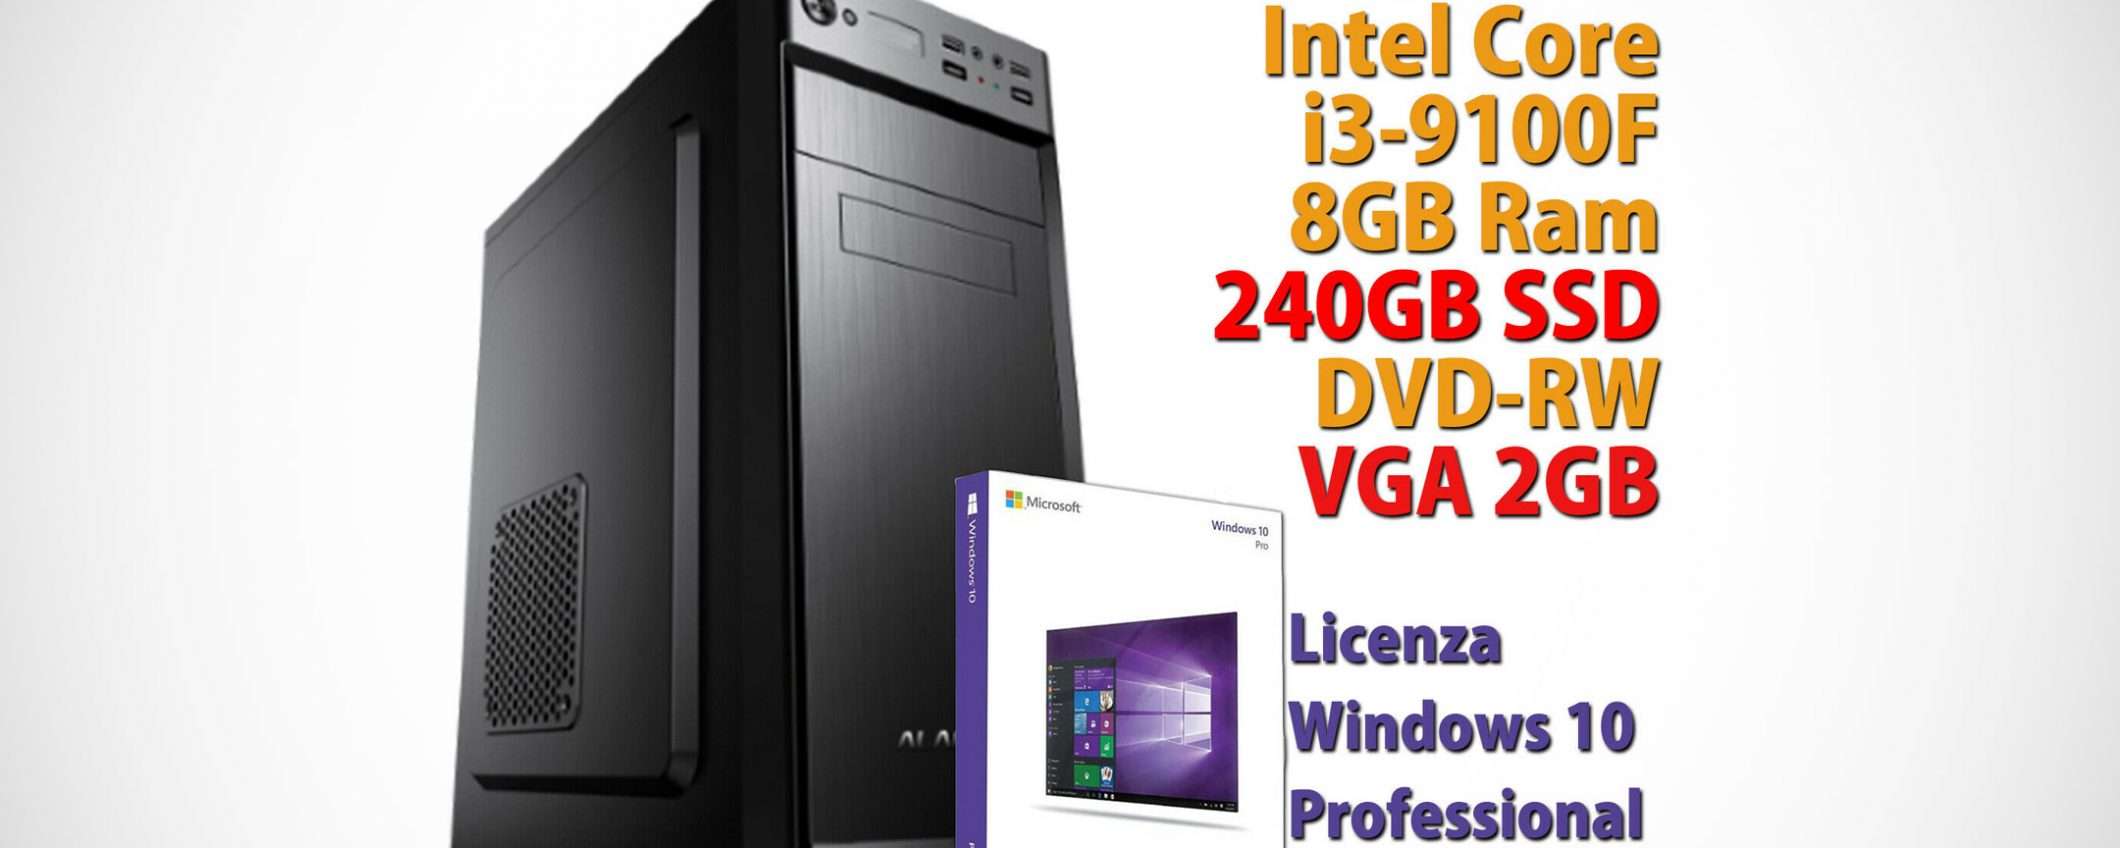 Un PC desktop completo a soli 315,90 euro